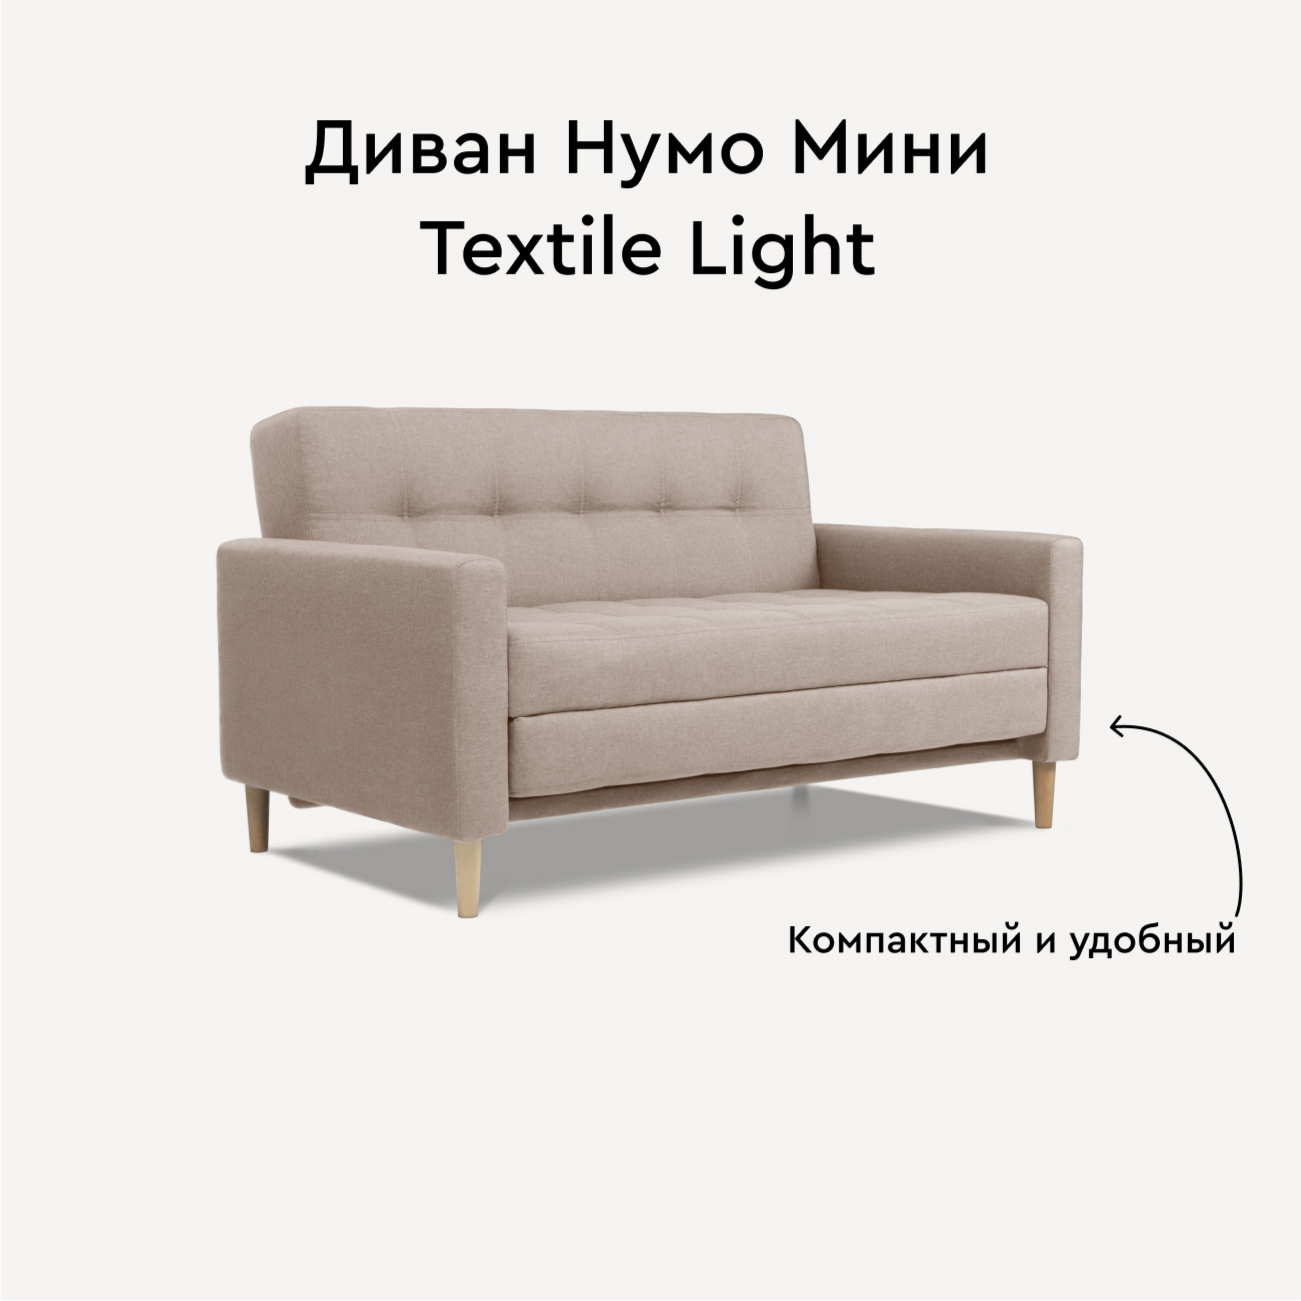 Диван Divan.ru Нумо Мини Textile Light 142х87х79 - купить в Москве, цены на Мегамаркет | 600016270986